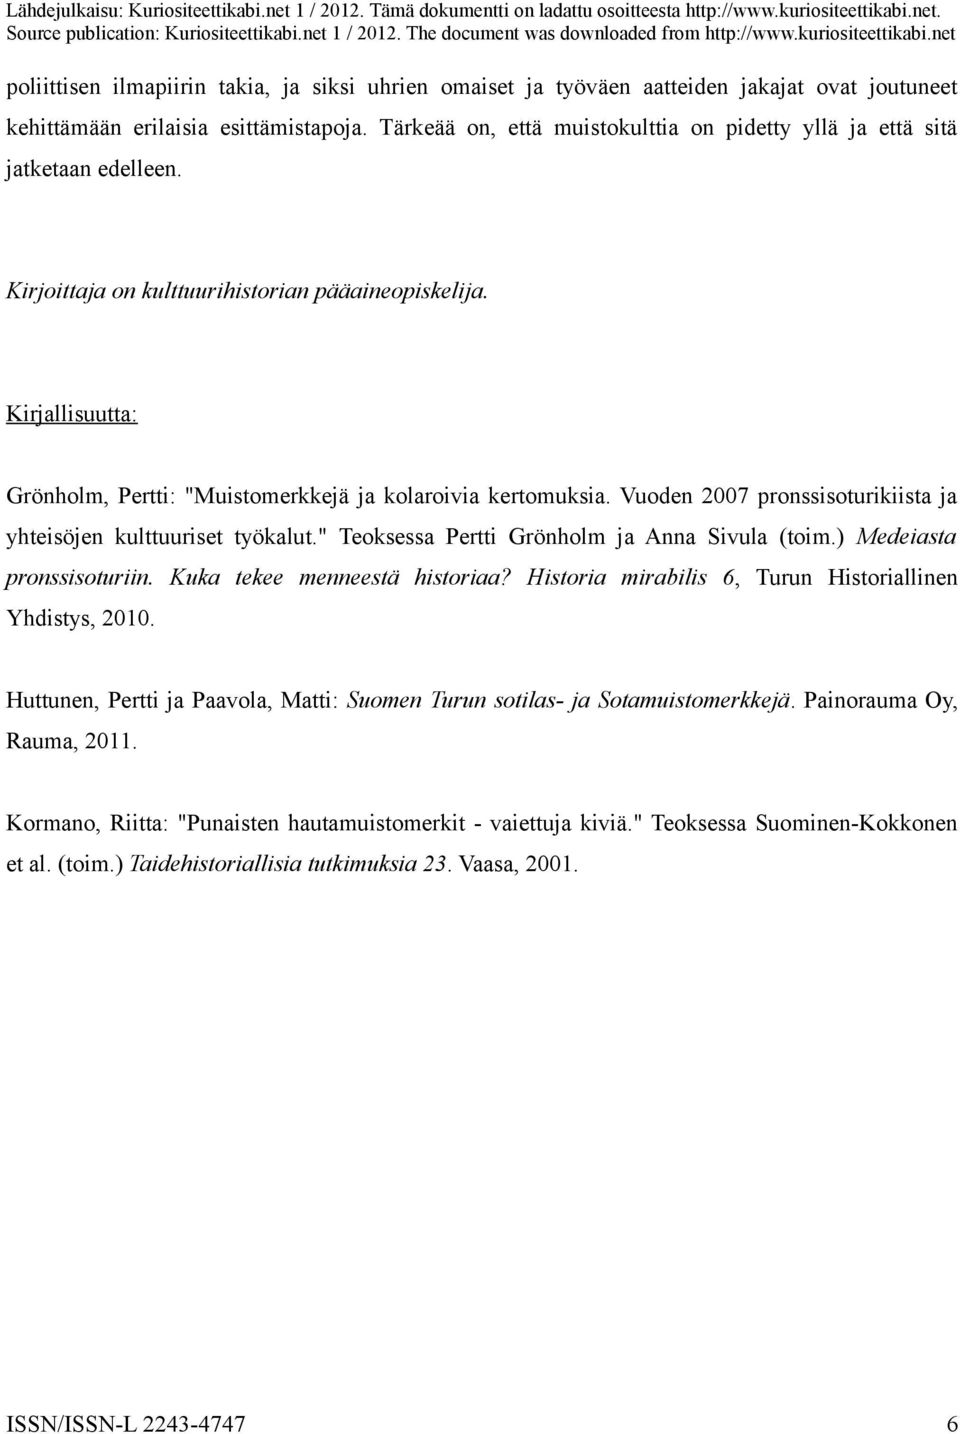 Kirjallisuutta: Grönholm, Pertti: "Muistomerkkejä ja kolaroivia kertomuksia. Vuoden 2007 pronssisoturikiista ja yhteisöjen kulttuuriset työkalut." Teoksessa Pertti Grönholm ja Anna Sivula (toim.